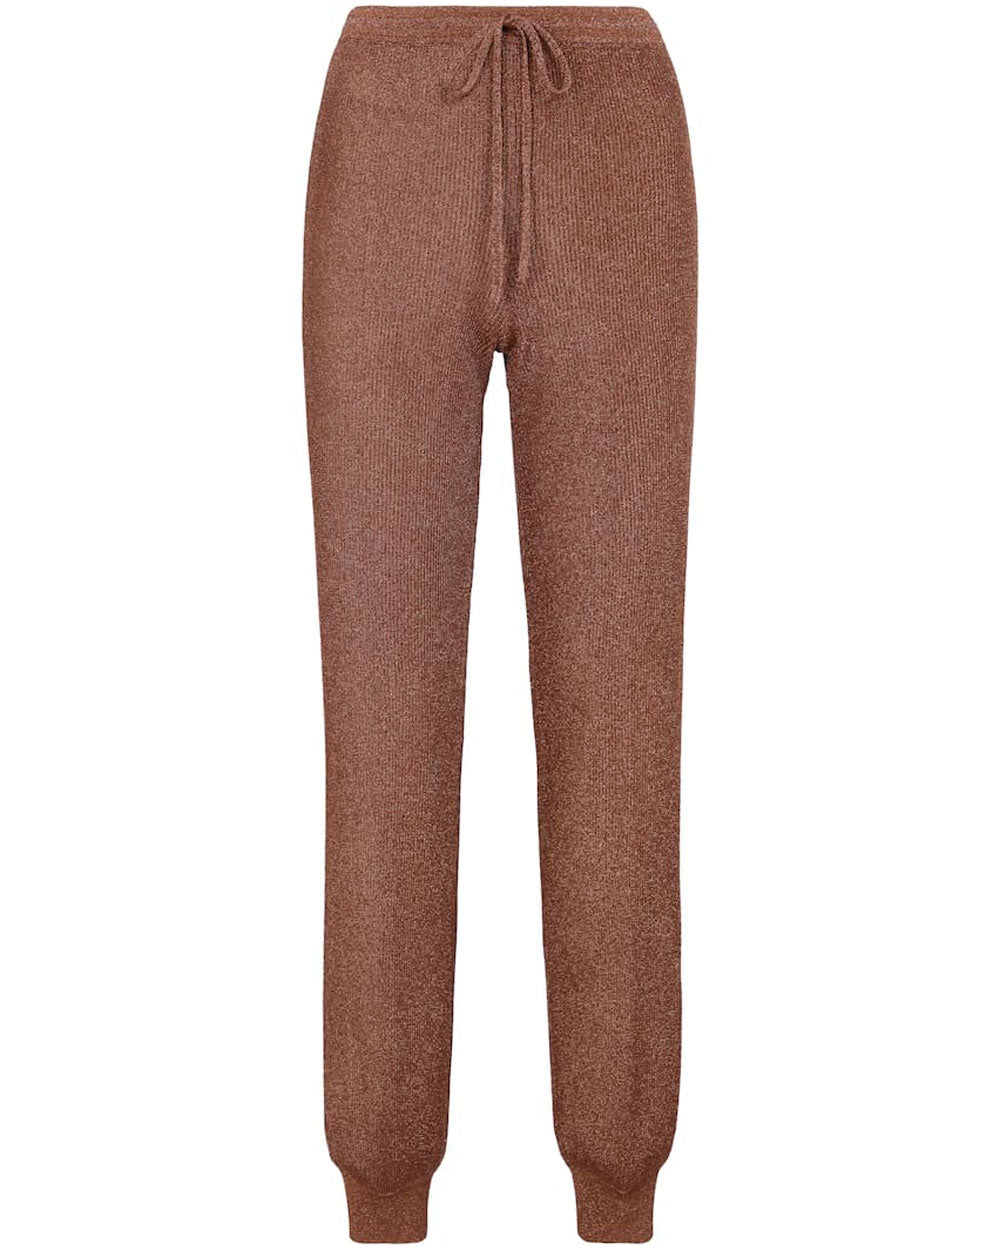 Brown Metallic Knit Pants